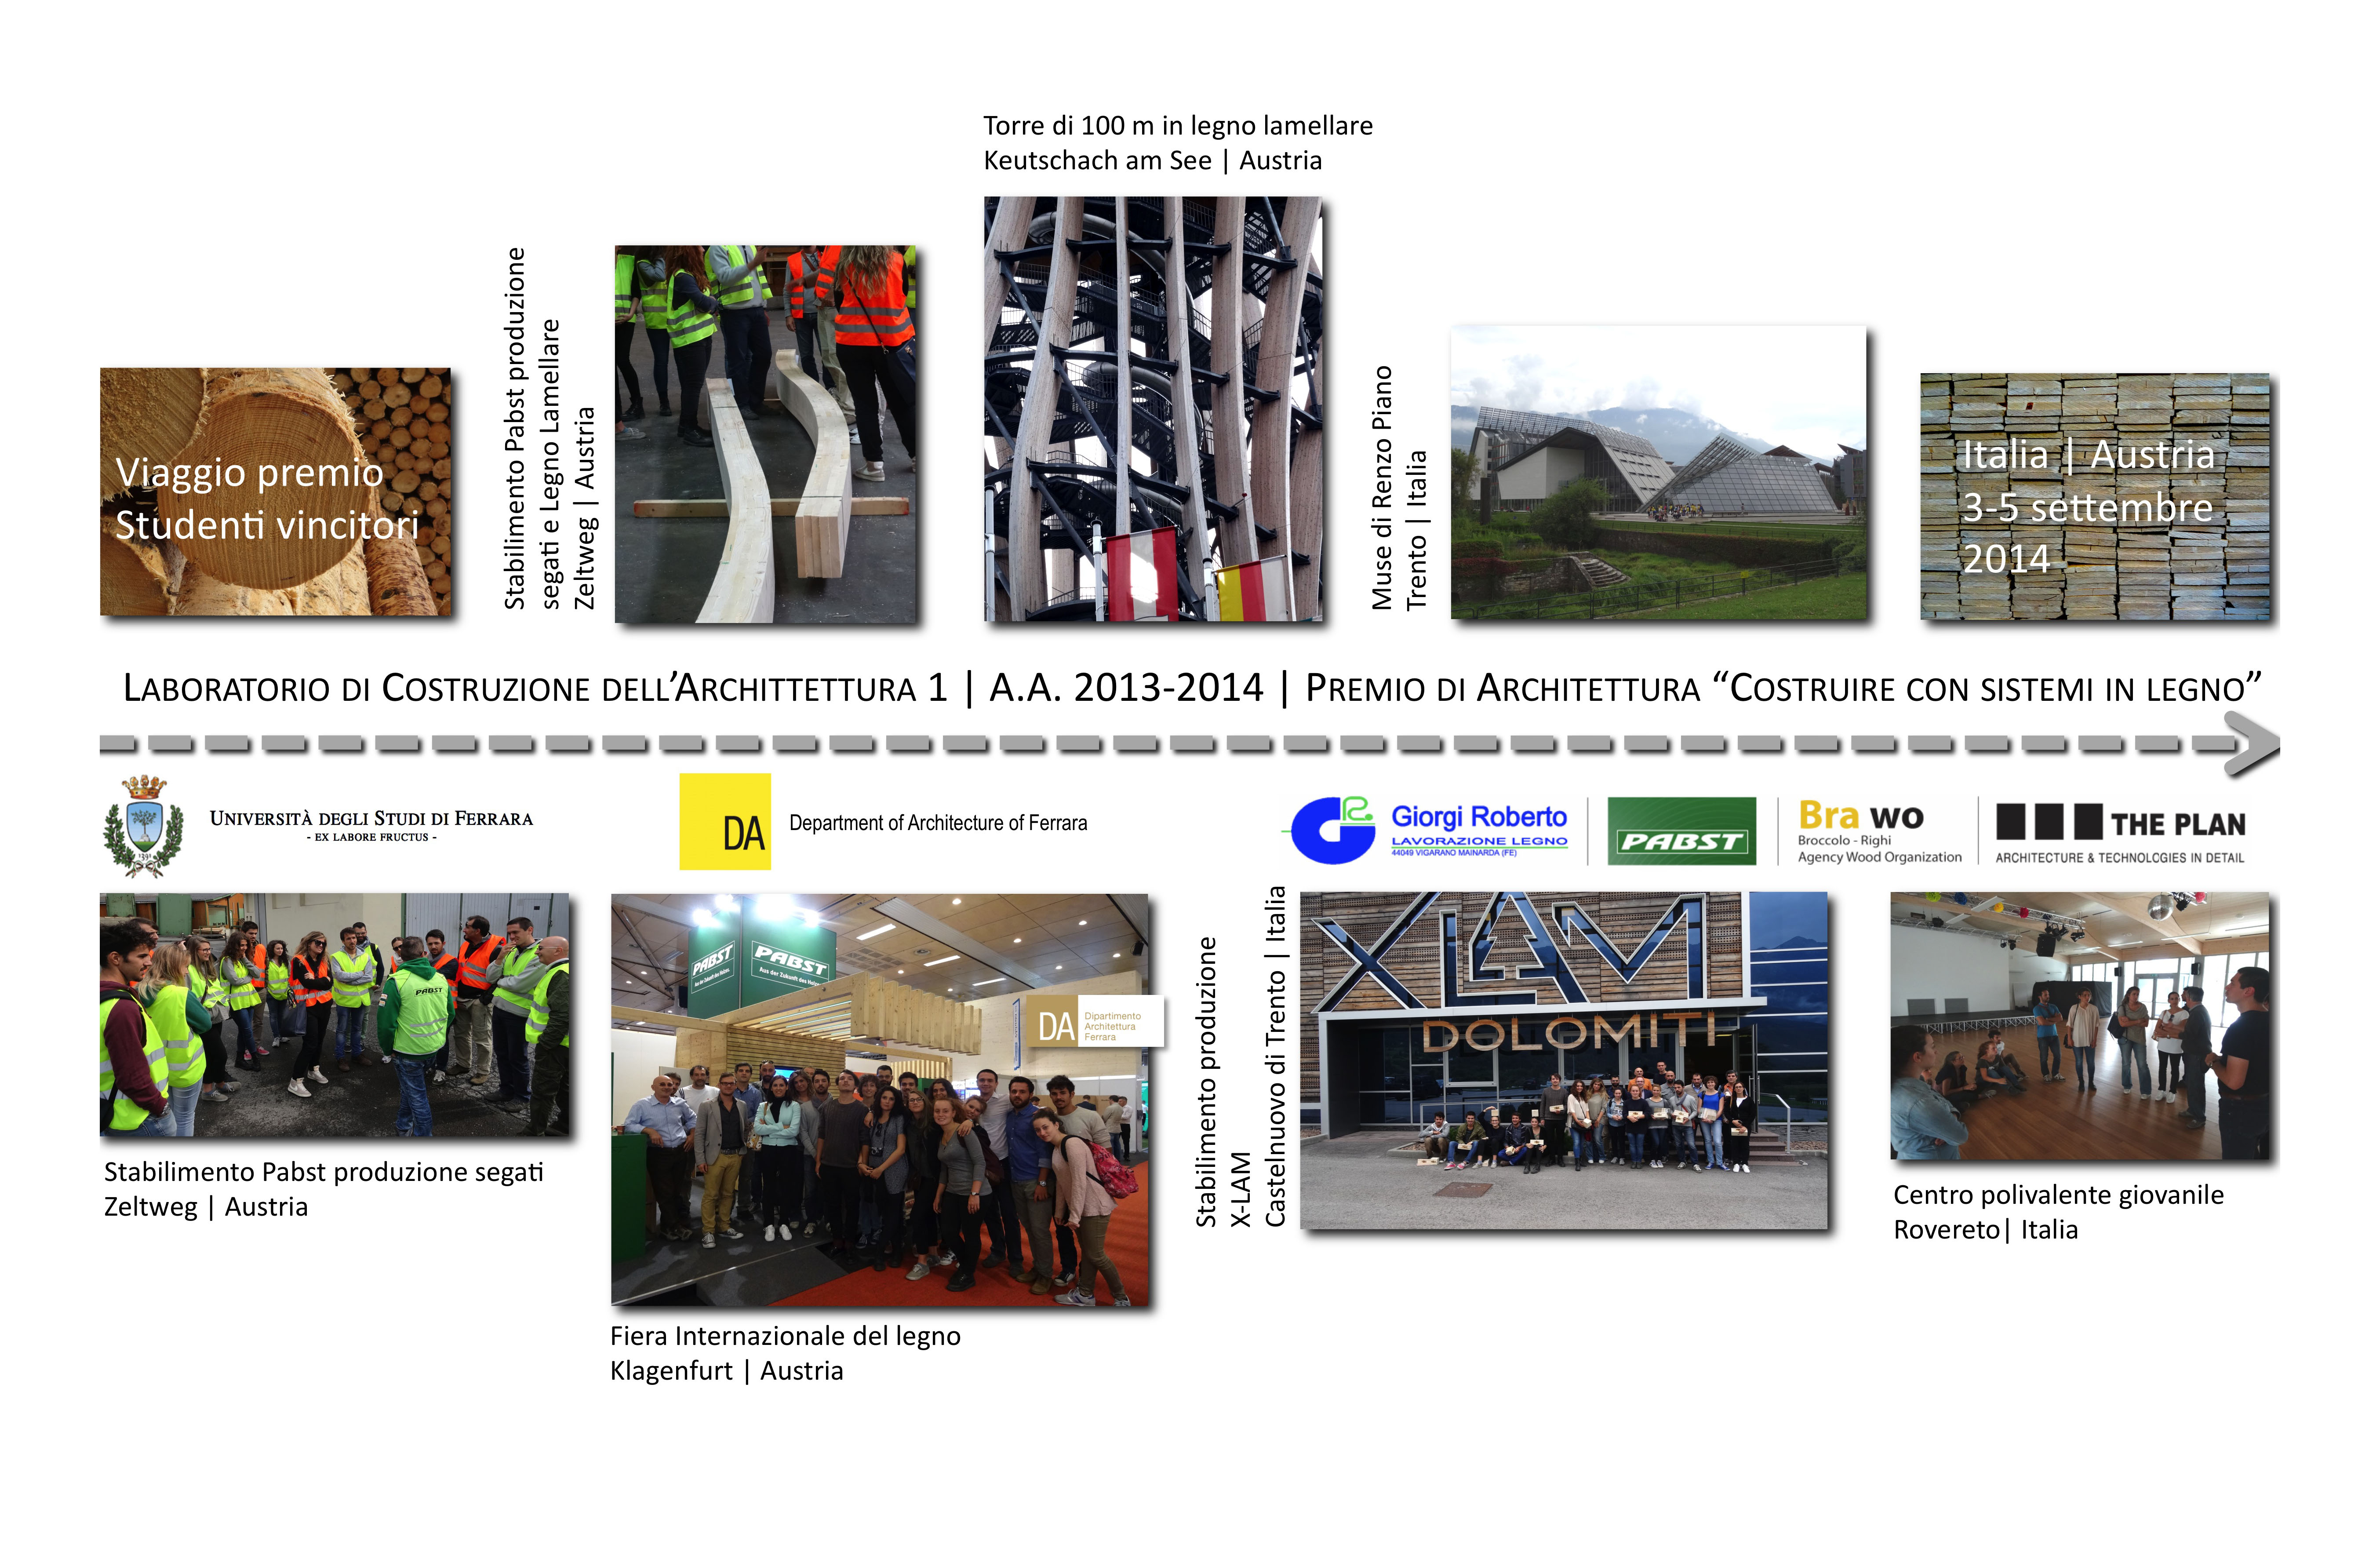 Viaggio in Austria per studenti premiati al concorso “Costruire con sistemi in legno”, XII edizione, Laboratorio di Costruzione dell’architettura 1_aa 2013-2014